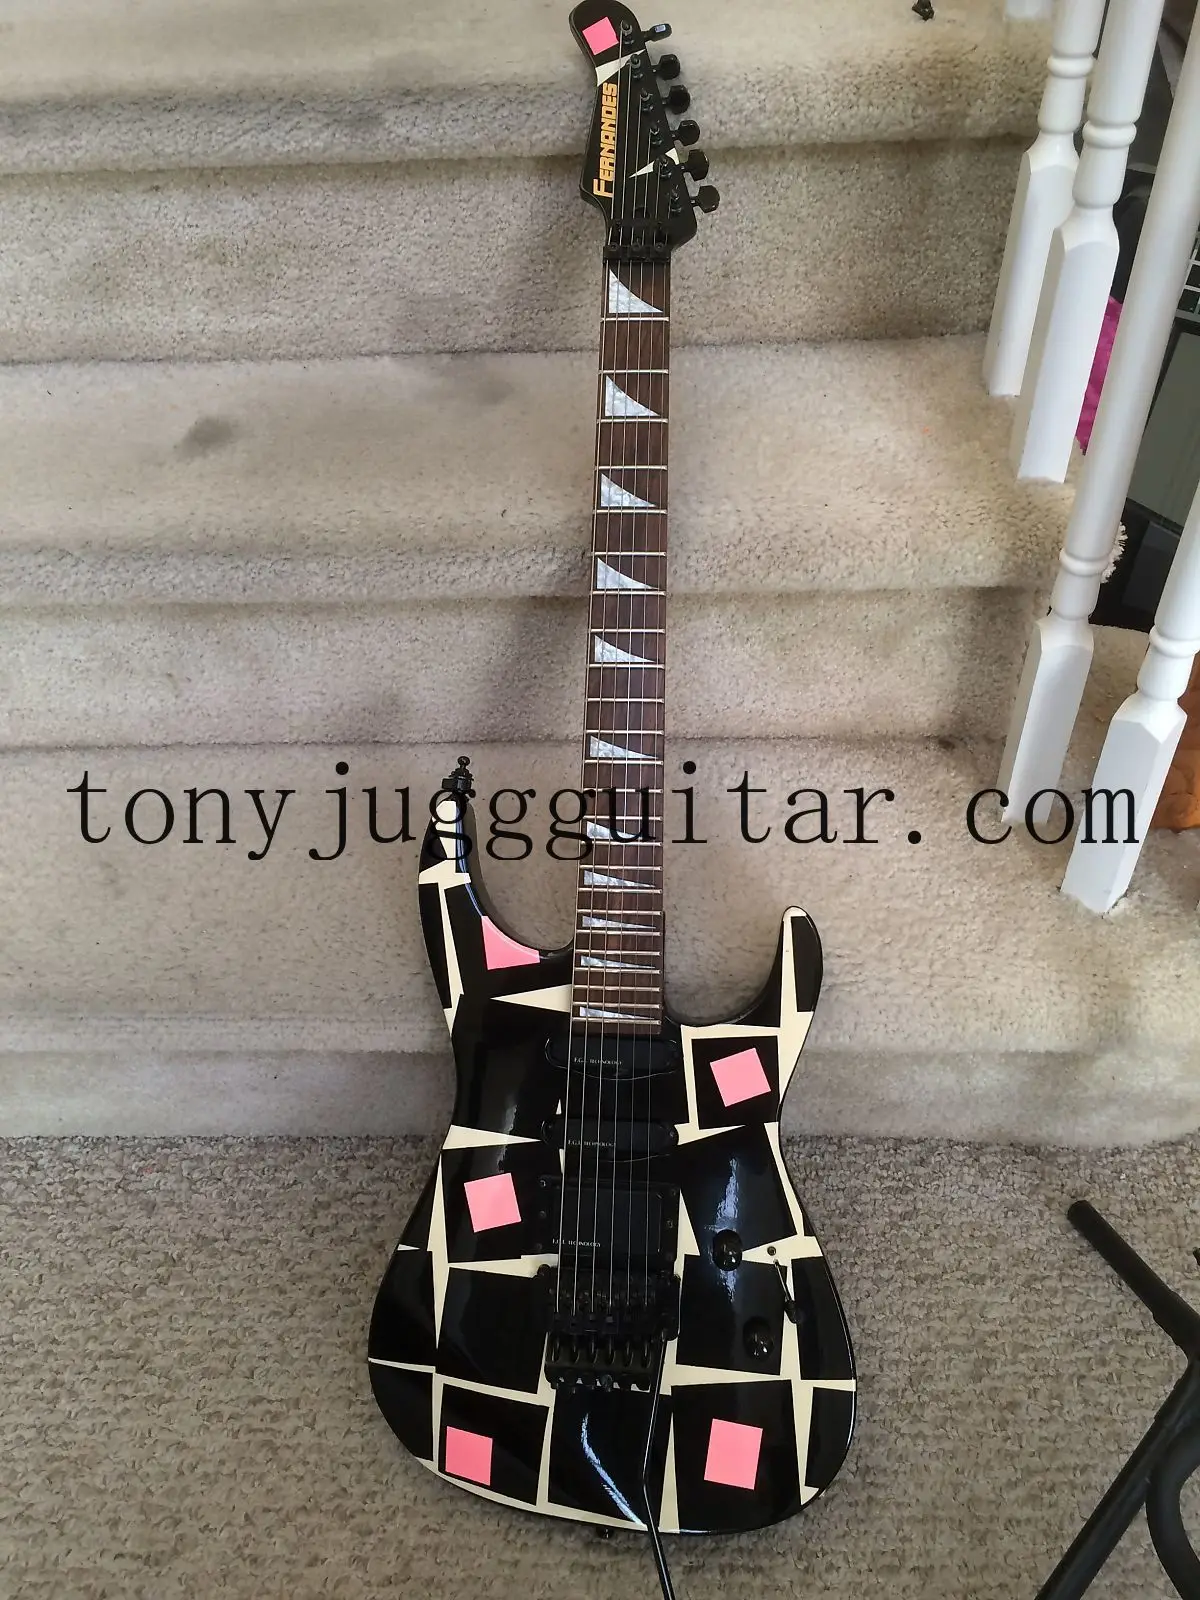 

Цифровая Электрическая гитара Фернандес Адриан Ванденберг, модель 1986 квадратов, графика, Floyd Rose Tremolo мост, черная фурнитура,